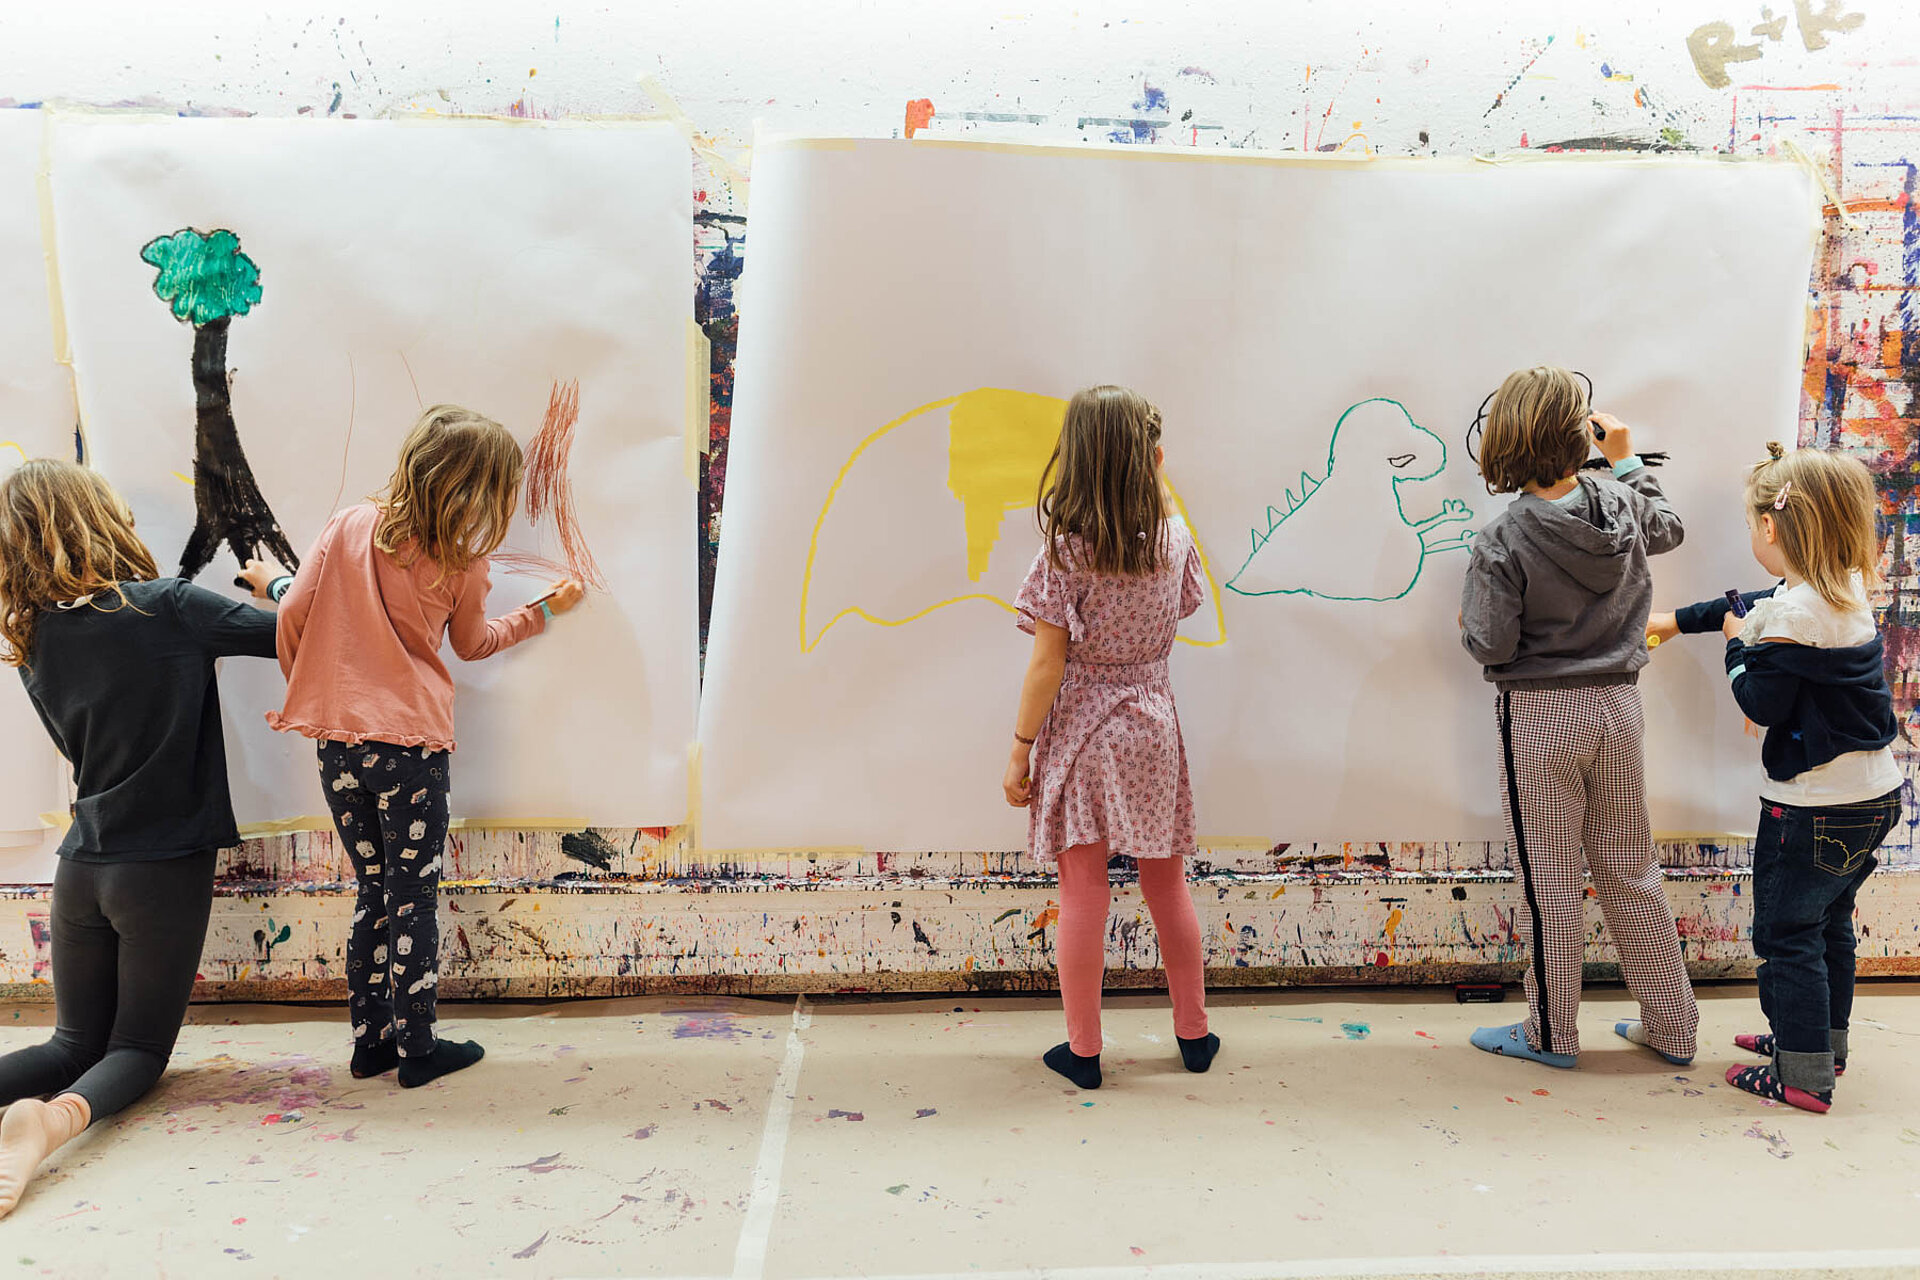 
            
                Kinder malen bunte Motive auf weißes Papier, das an der Wand hängt
            
        